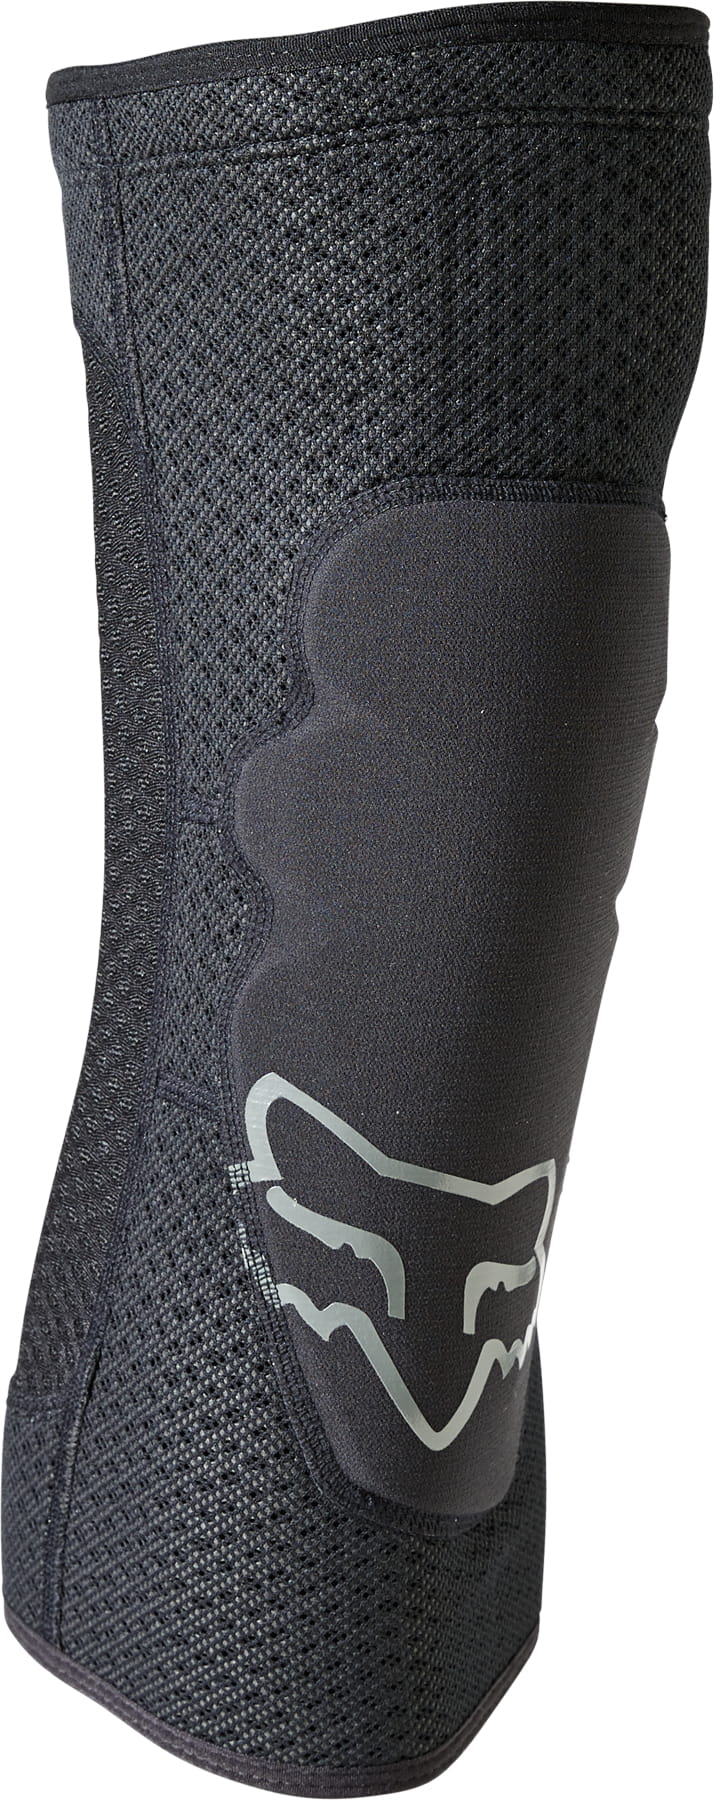 Knie-Schienbein-Protektoren Fox Racing Enduro Knee Sleeve Black Grey L